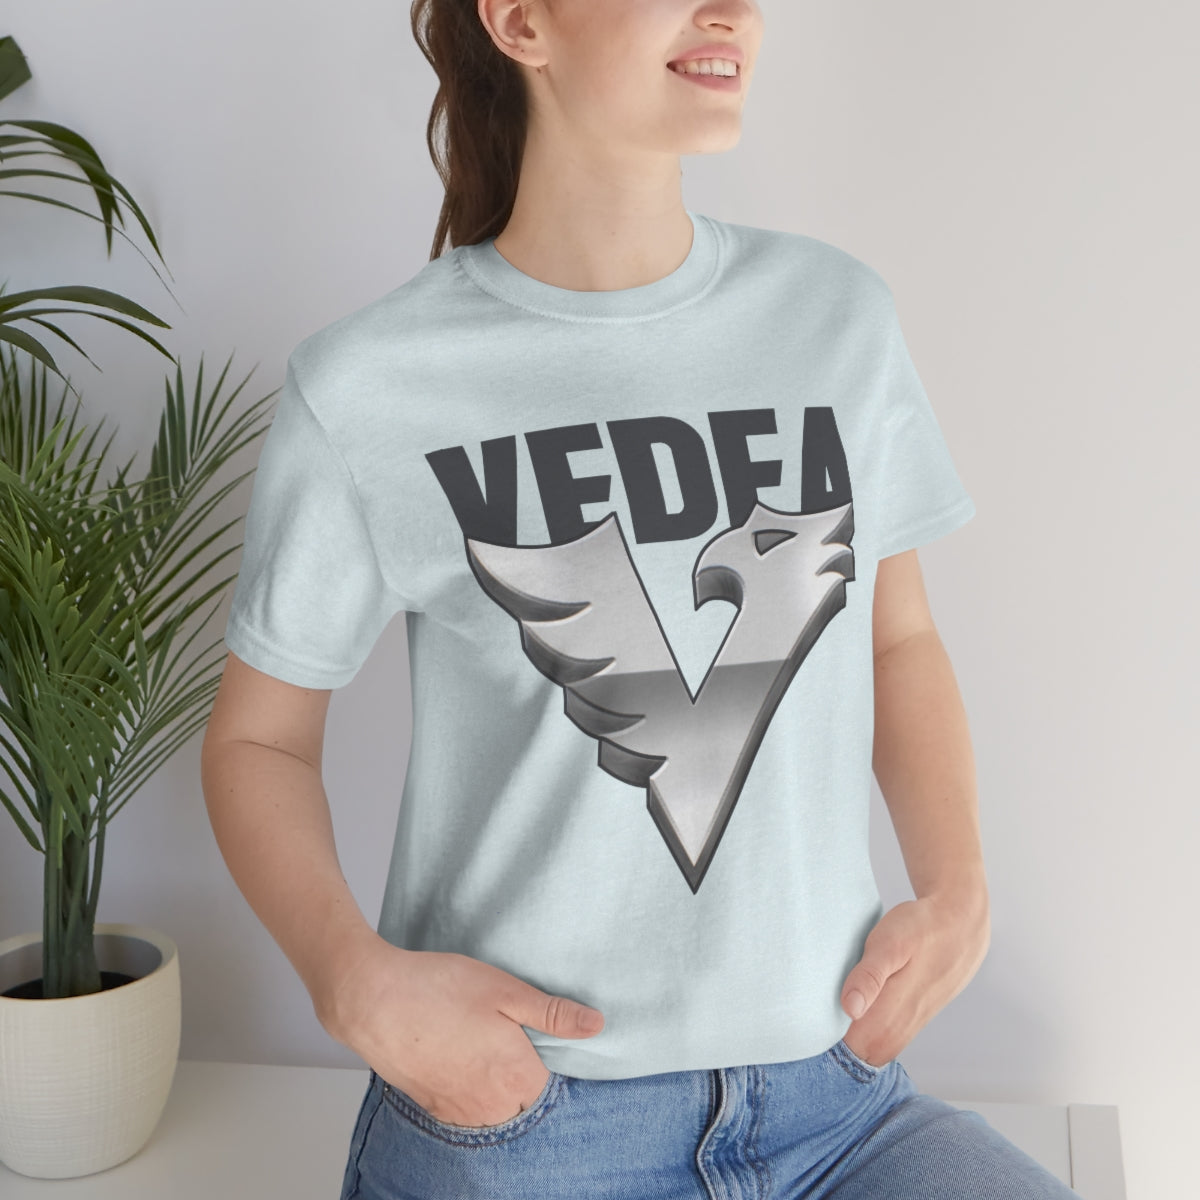 vda Soft T Shirt